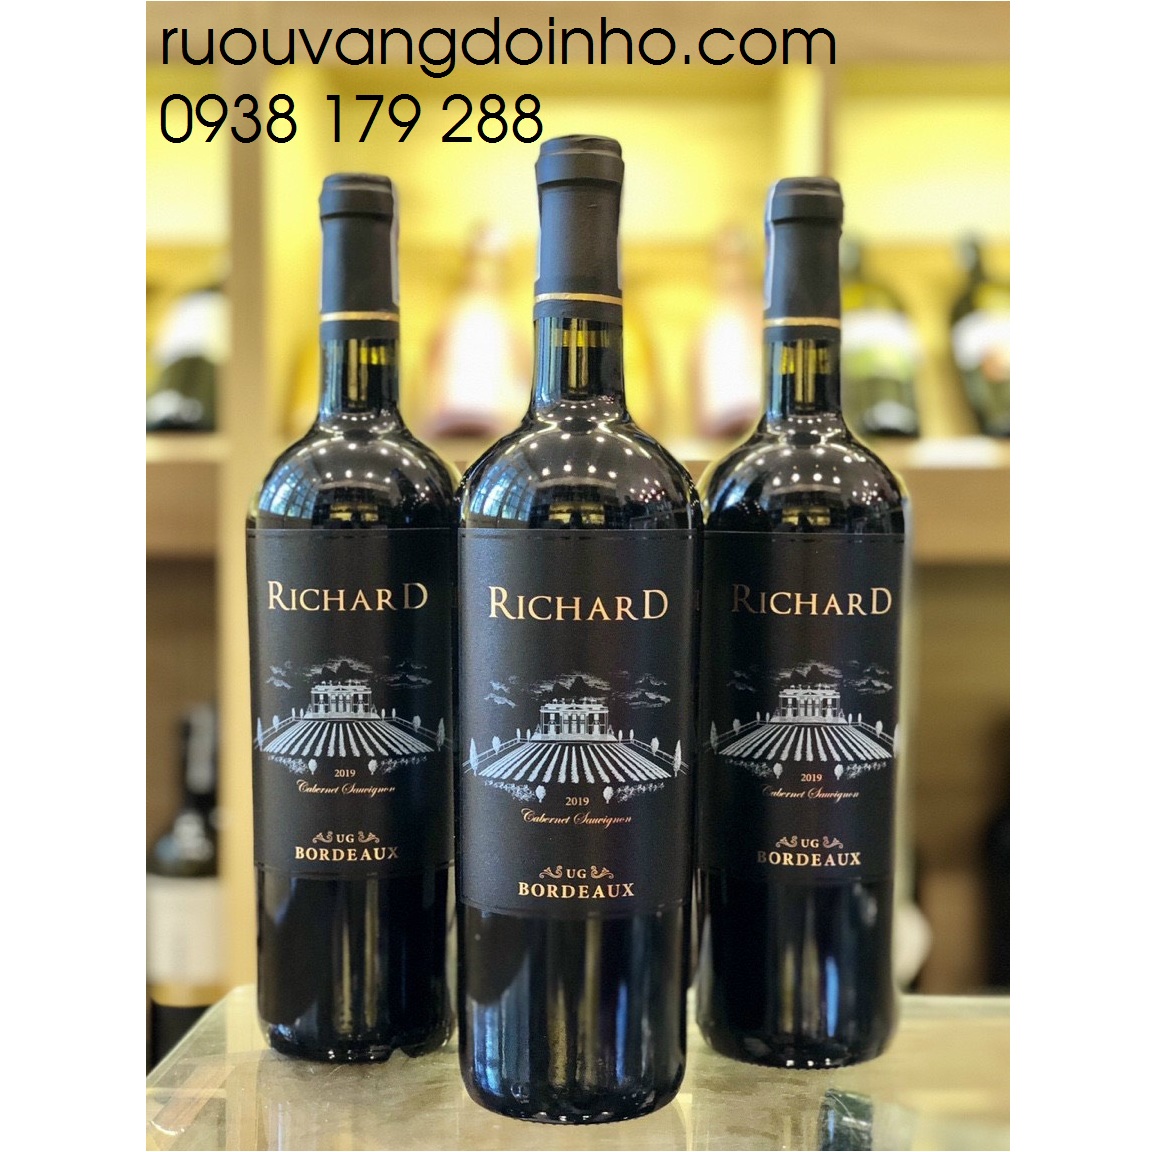 Rượu vang Pháp Richard Bordeaux.